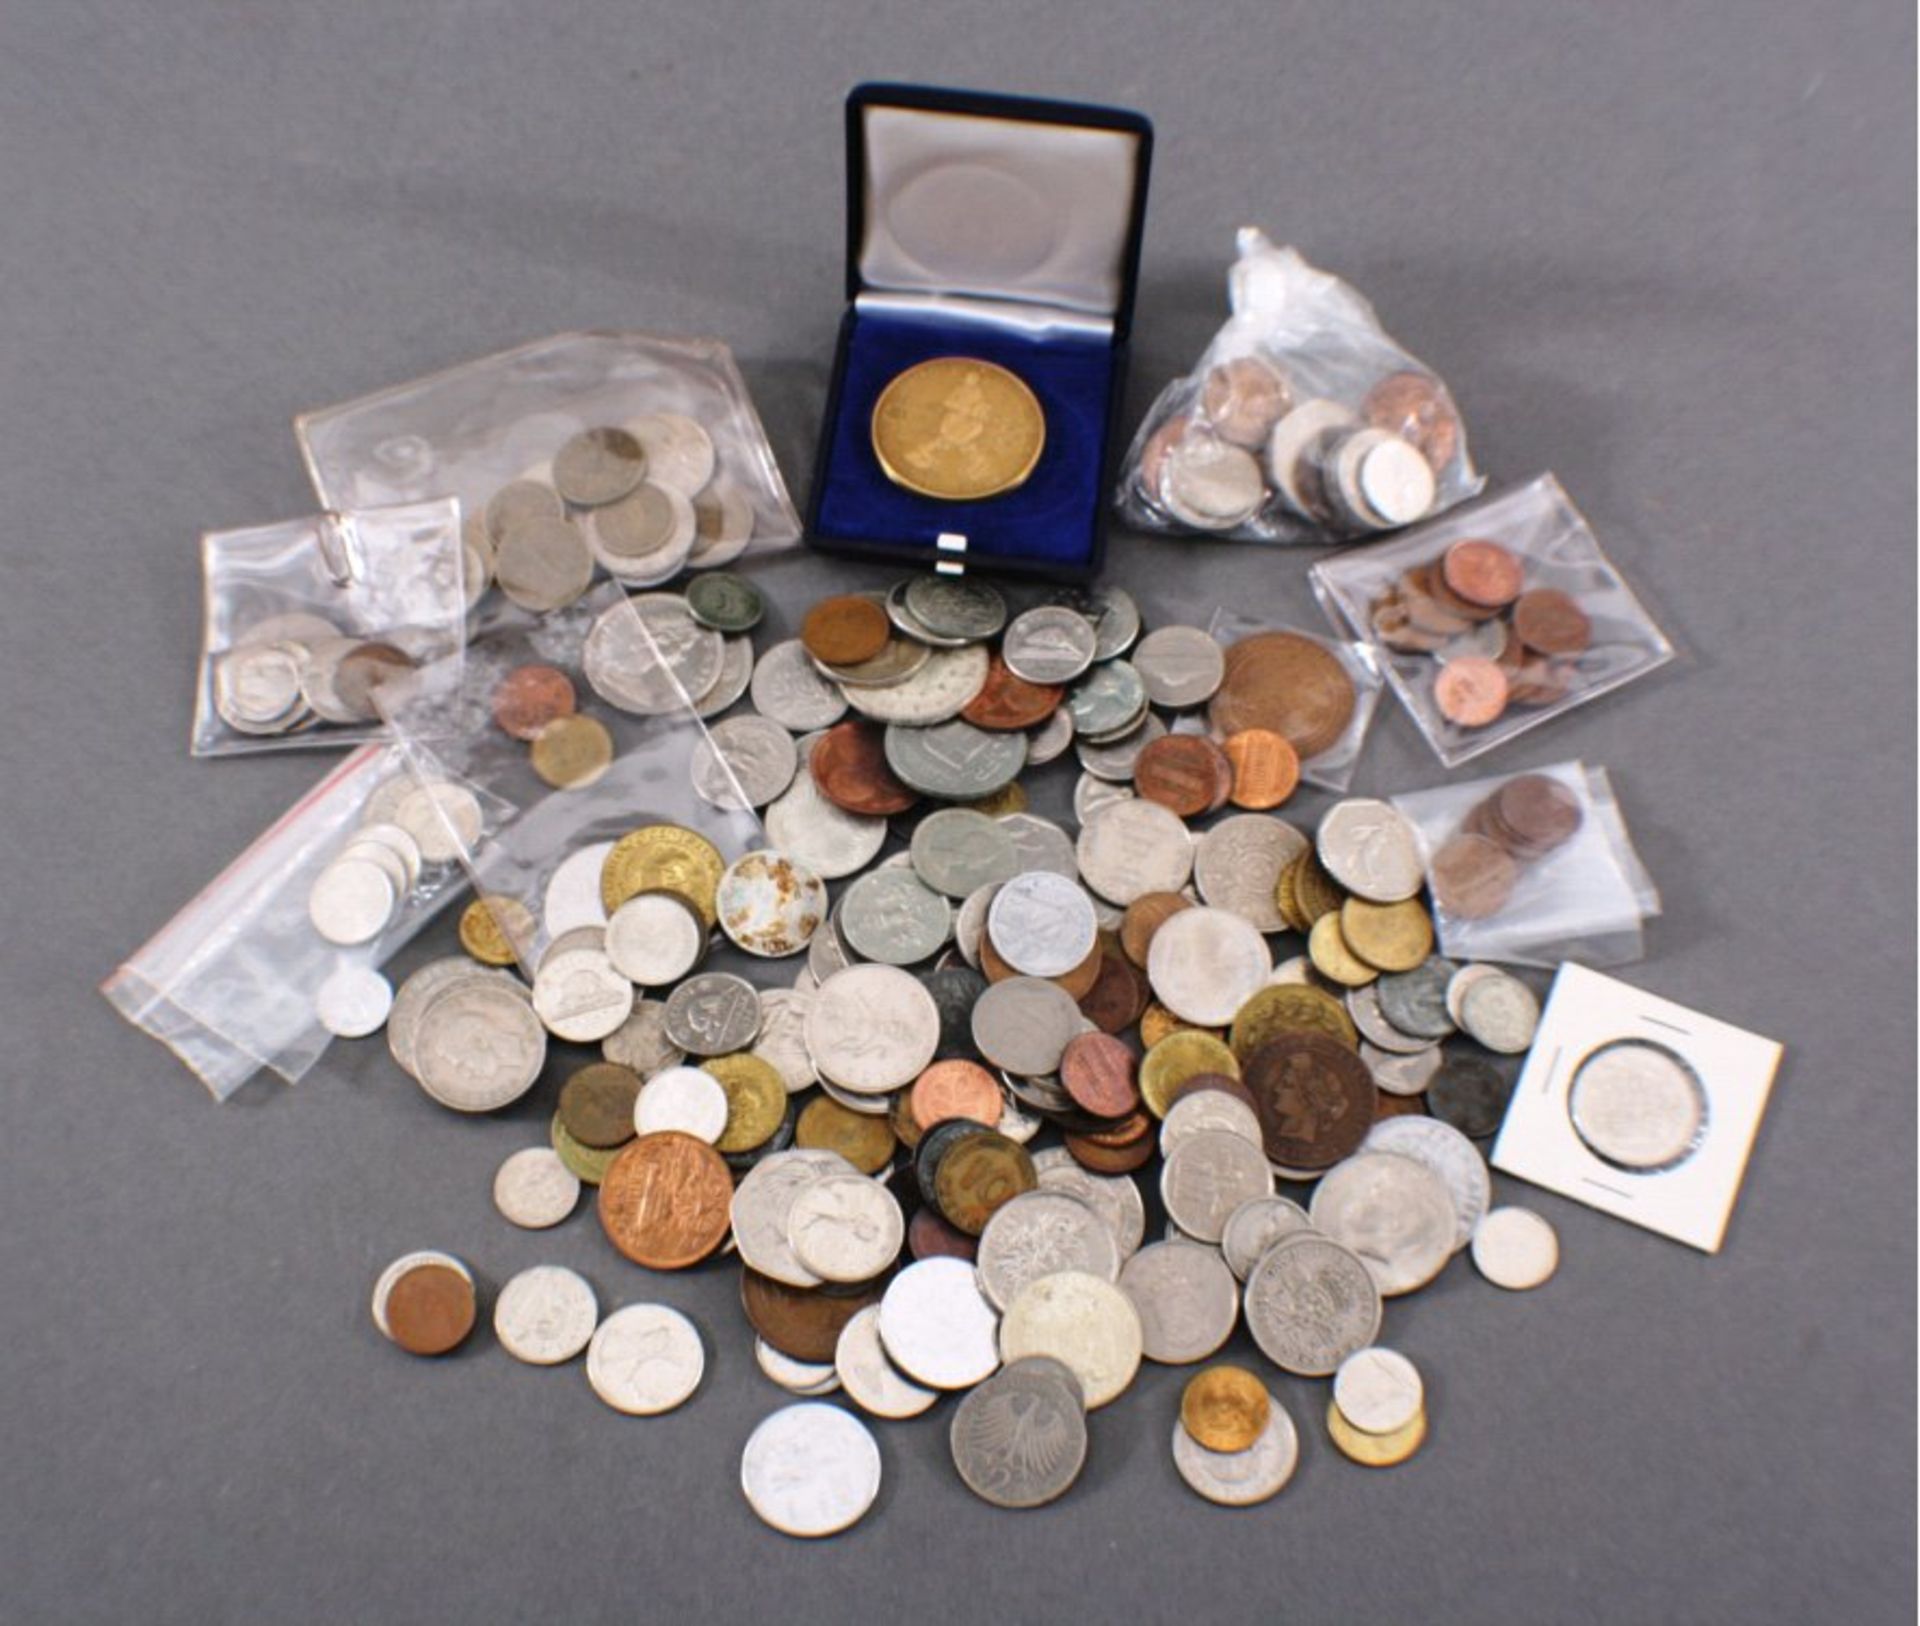 Konvolut Münzen, Alle WeltBunt gemischt, verschiedene Länder und Währungen, Münzen undMedaillen.